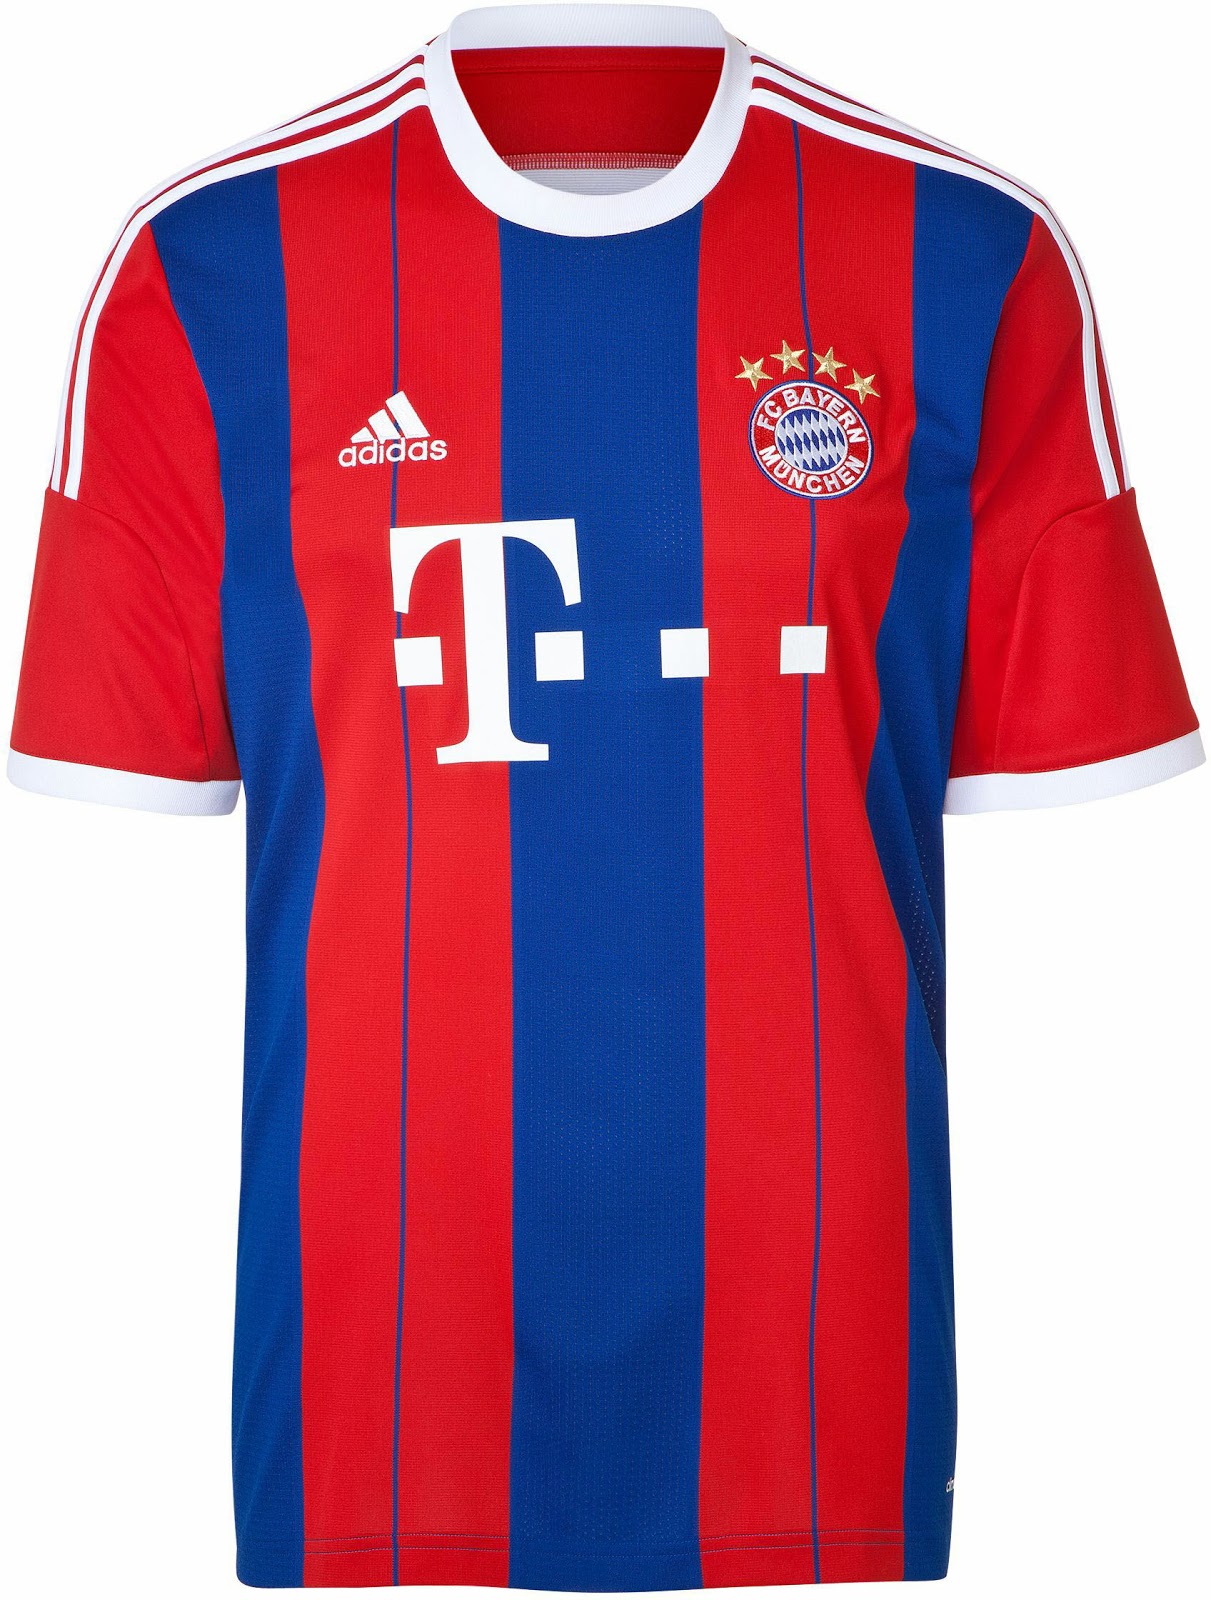 14/15 Bayern Munich Home Jersey Shirt